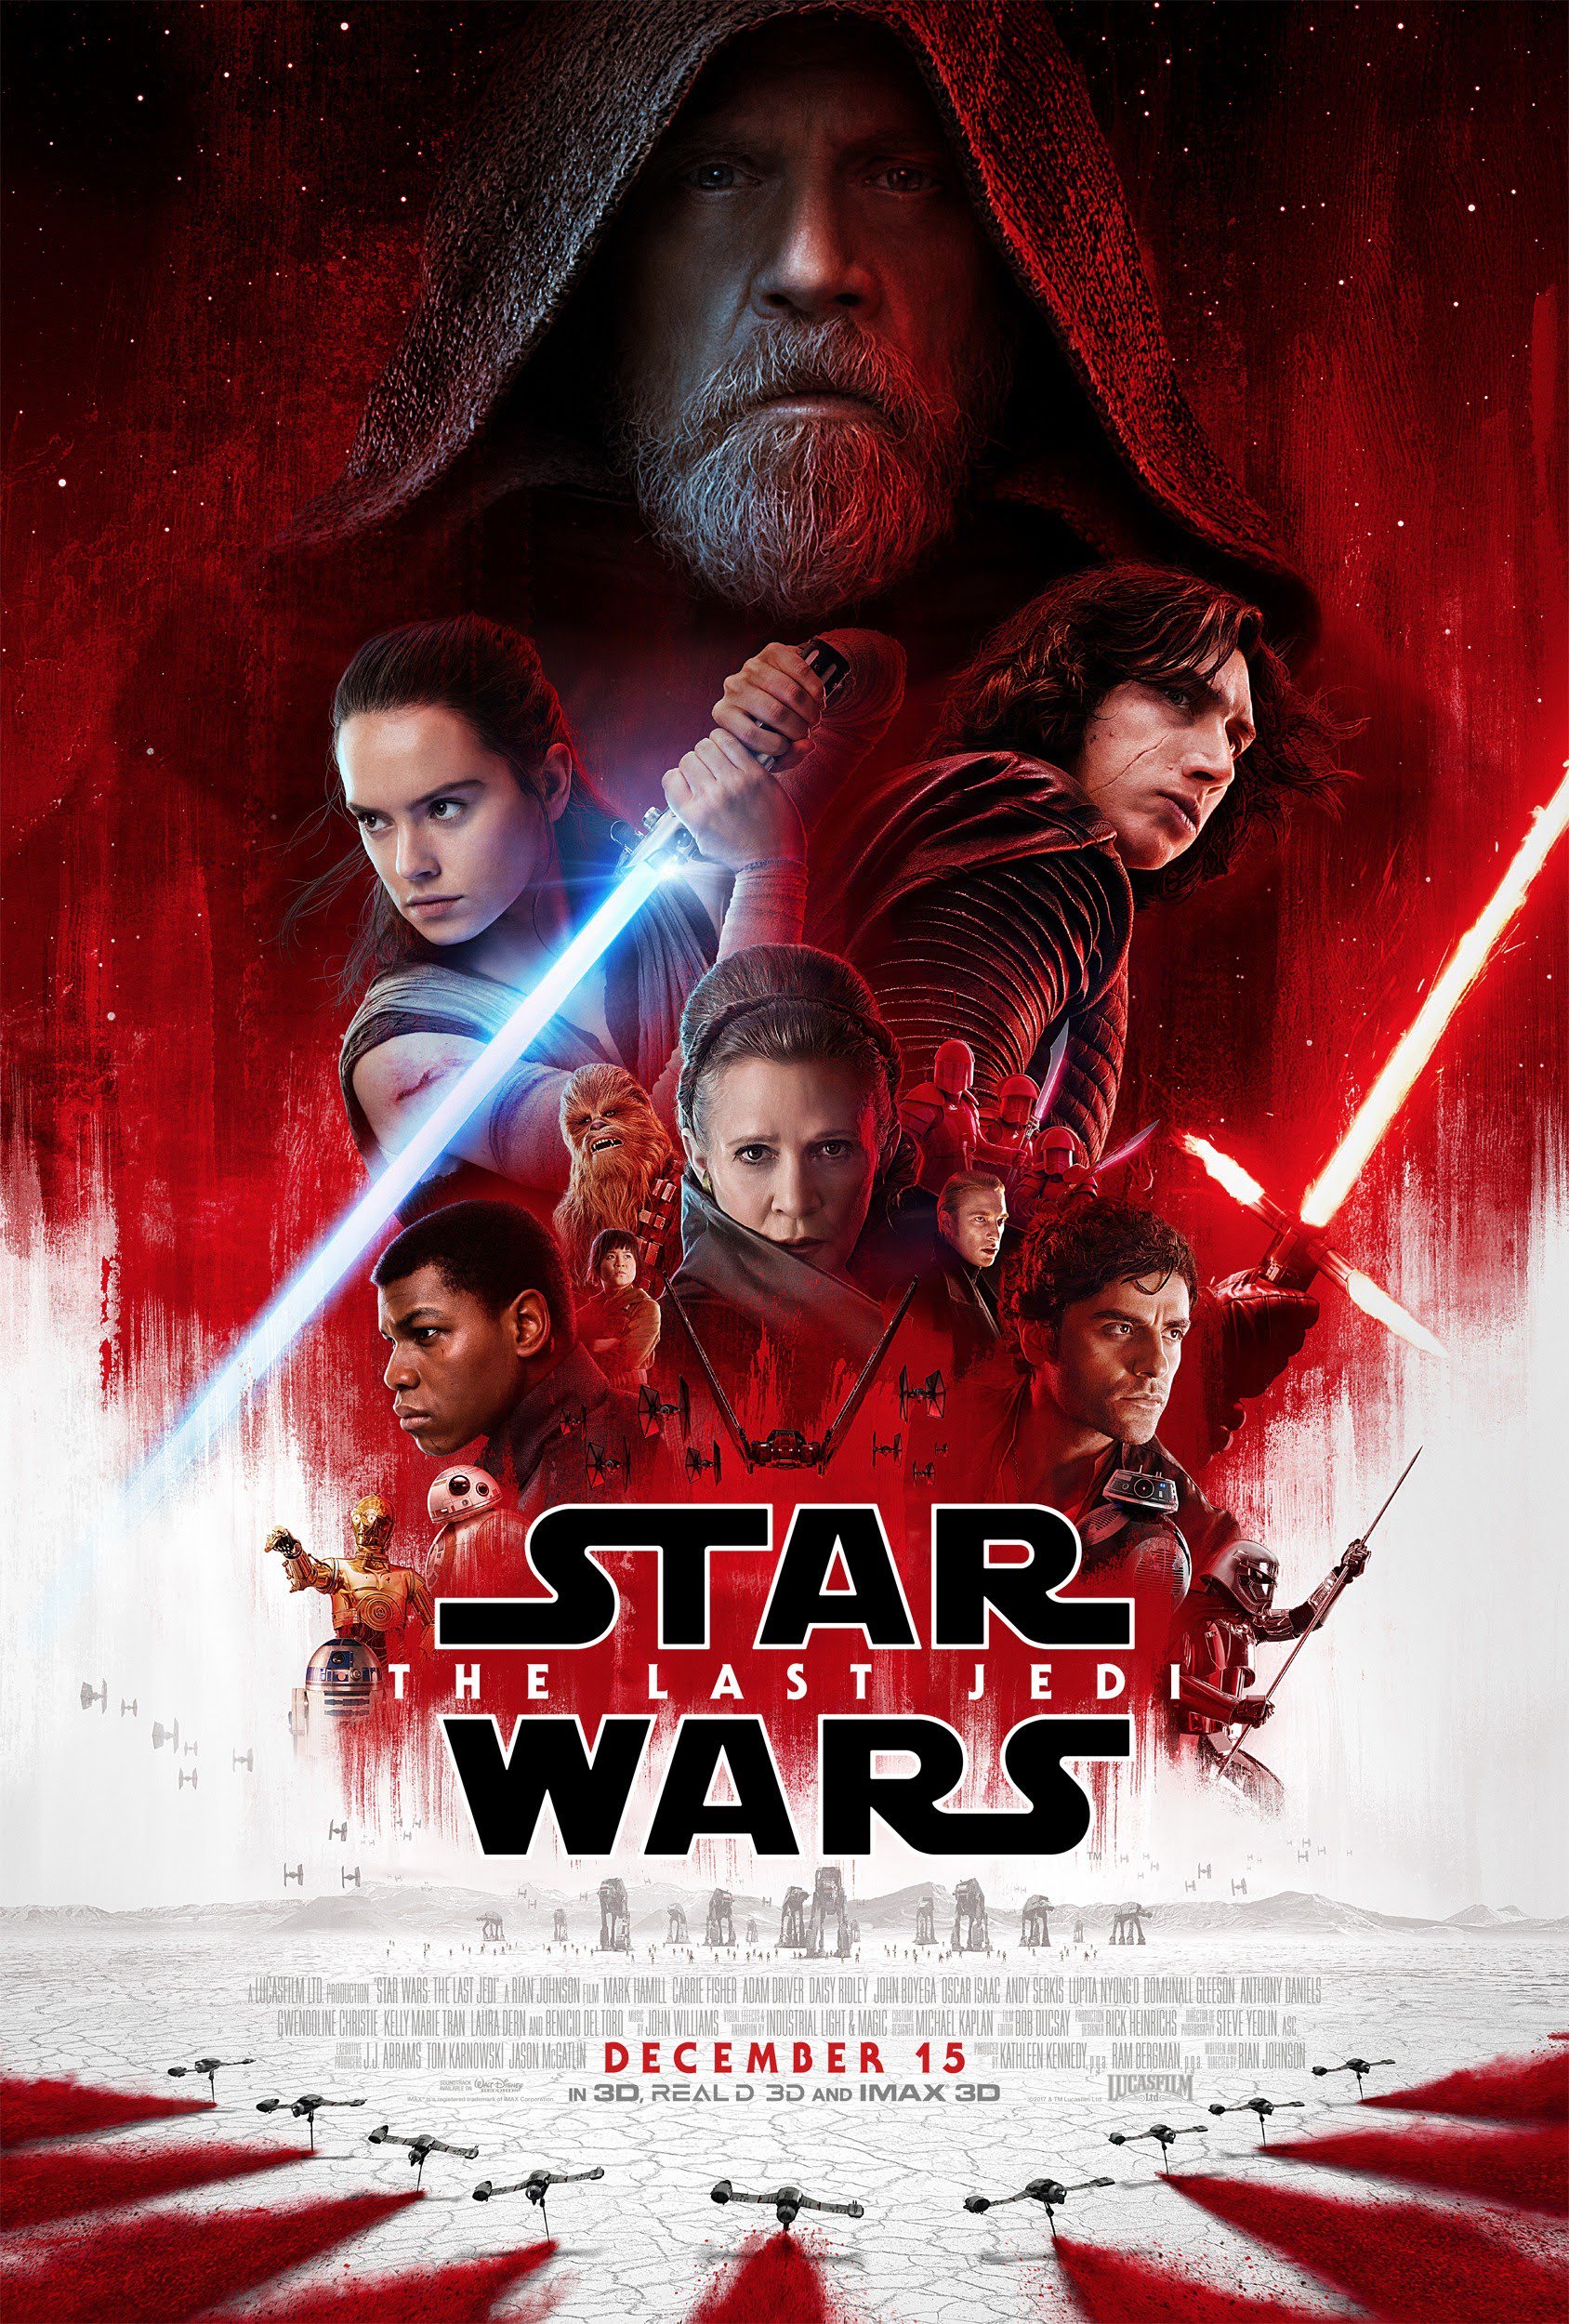 Star Wars Resistance - Metacritic